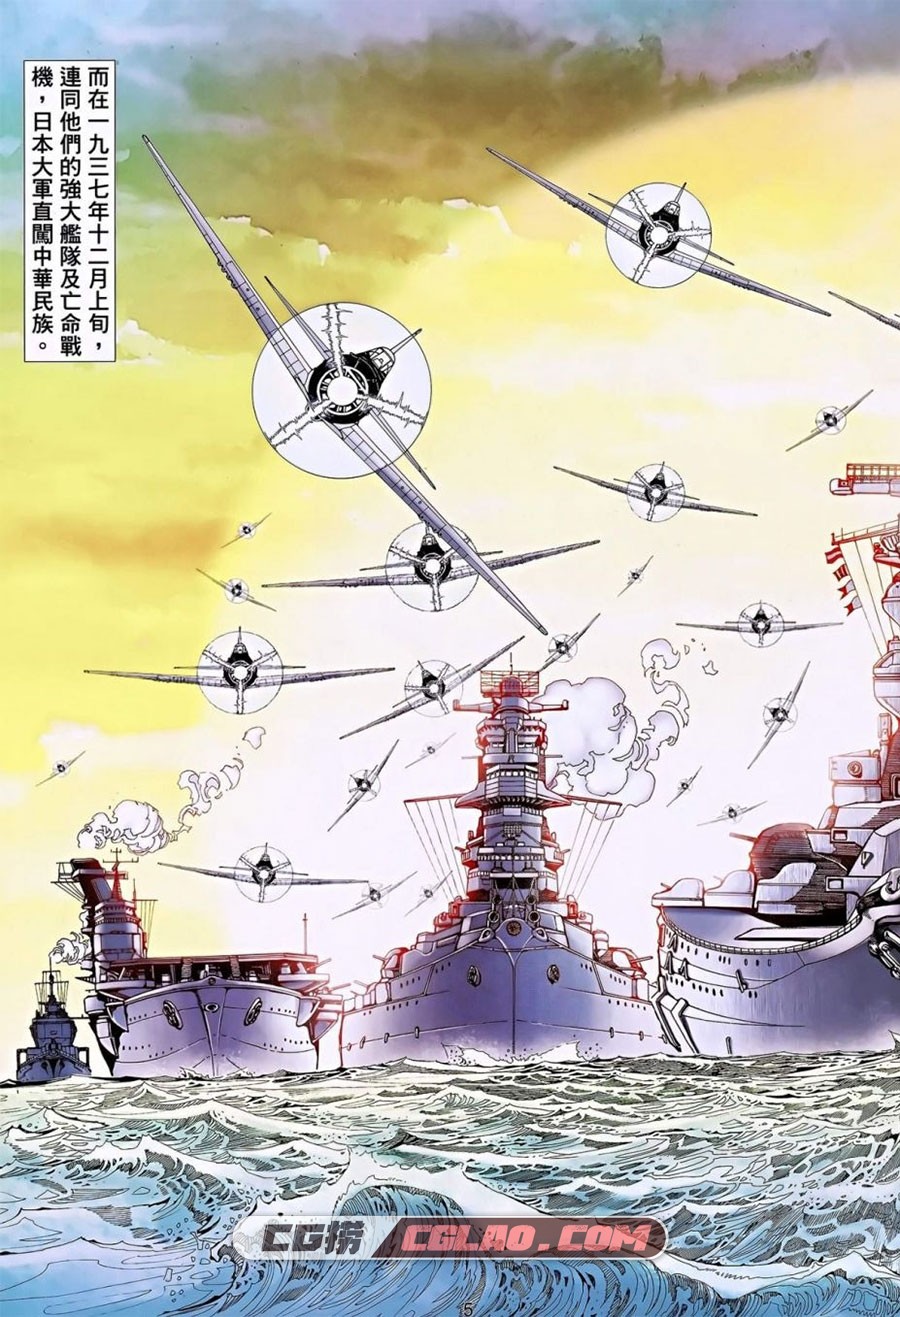 神风英雄 海洋二号 4册 漫画全集下载 百度网盘,Image00004.jpg